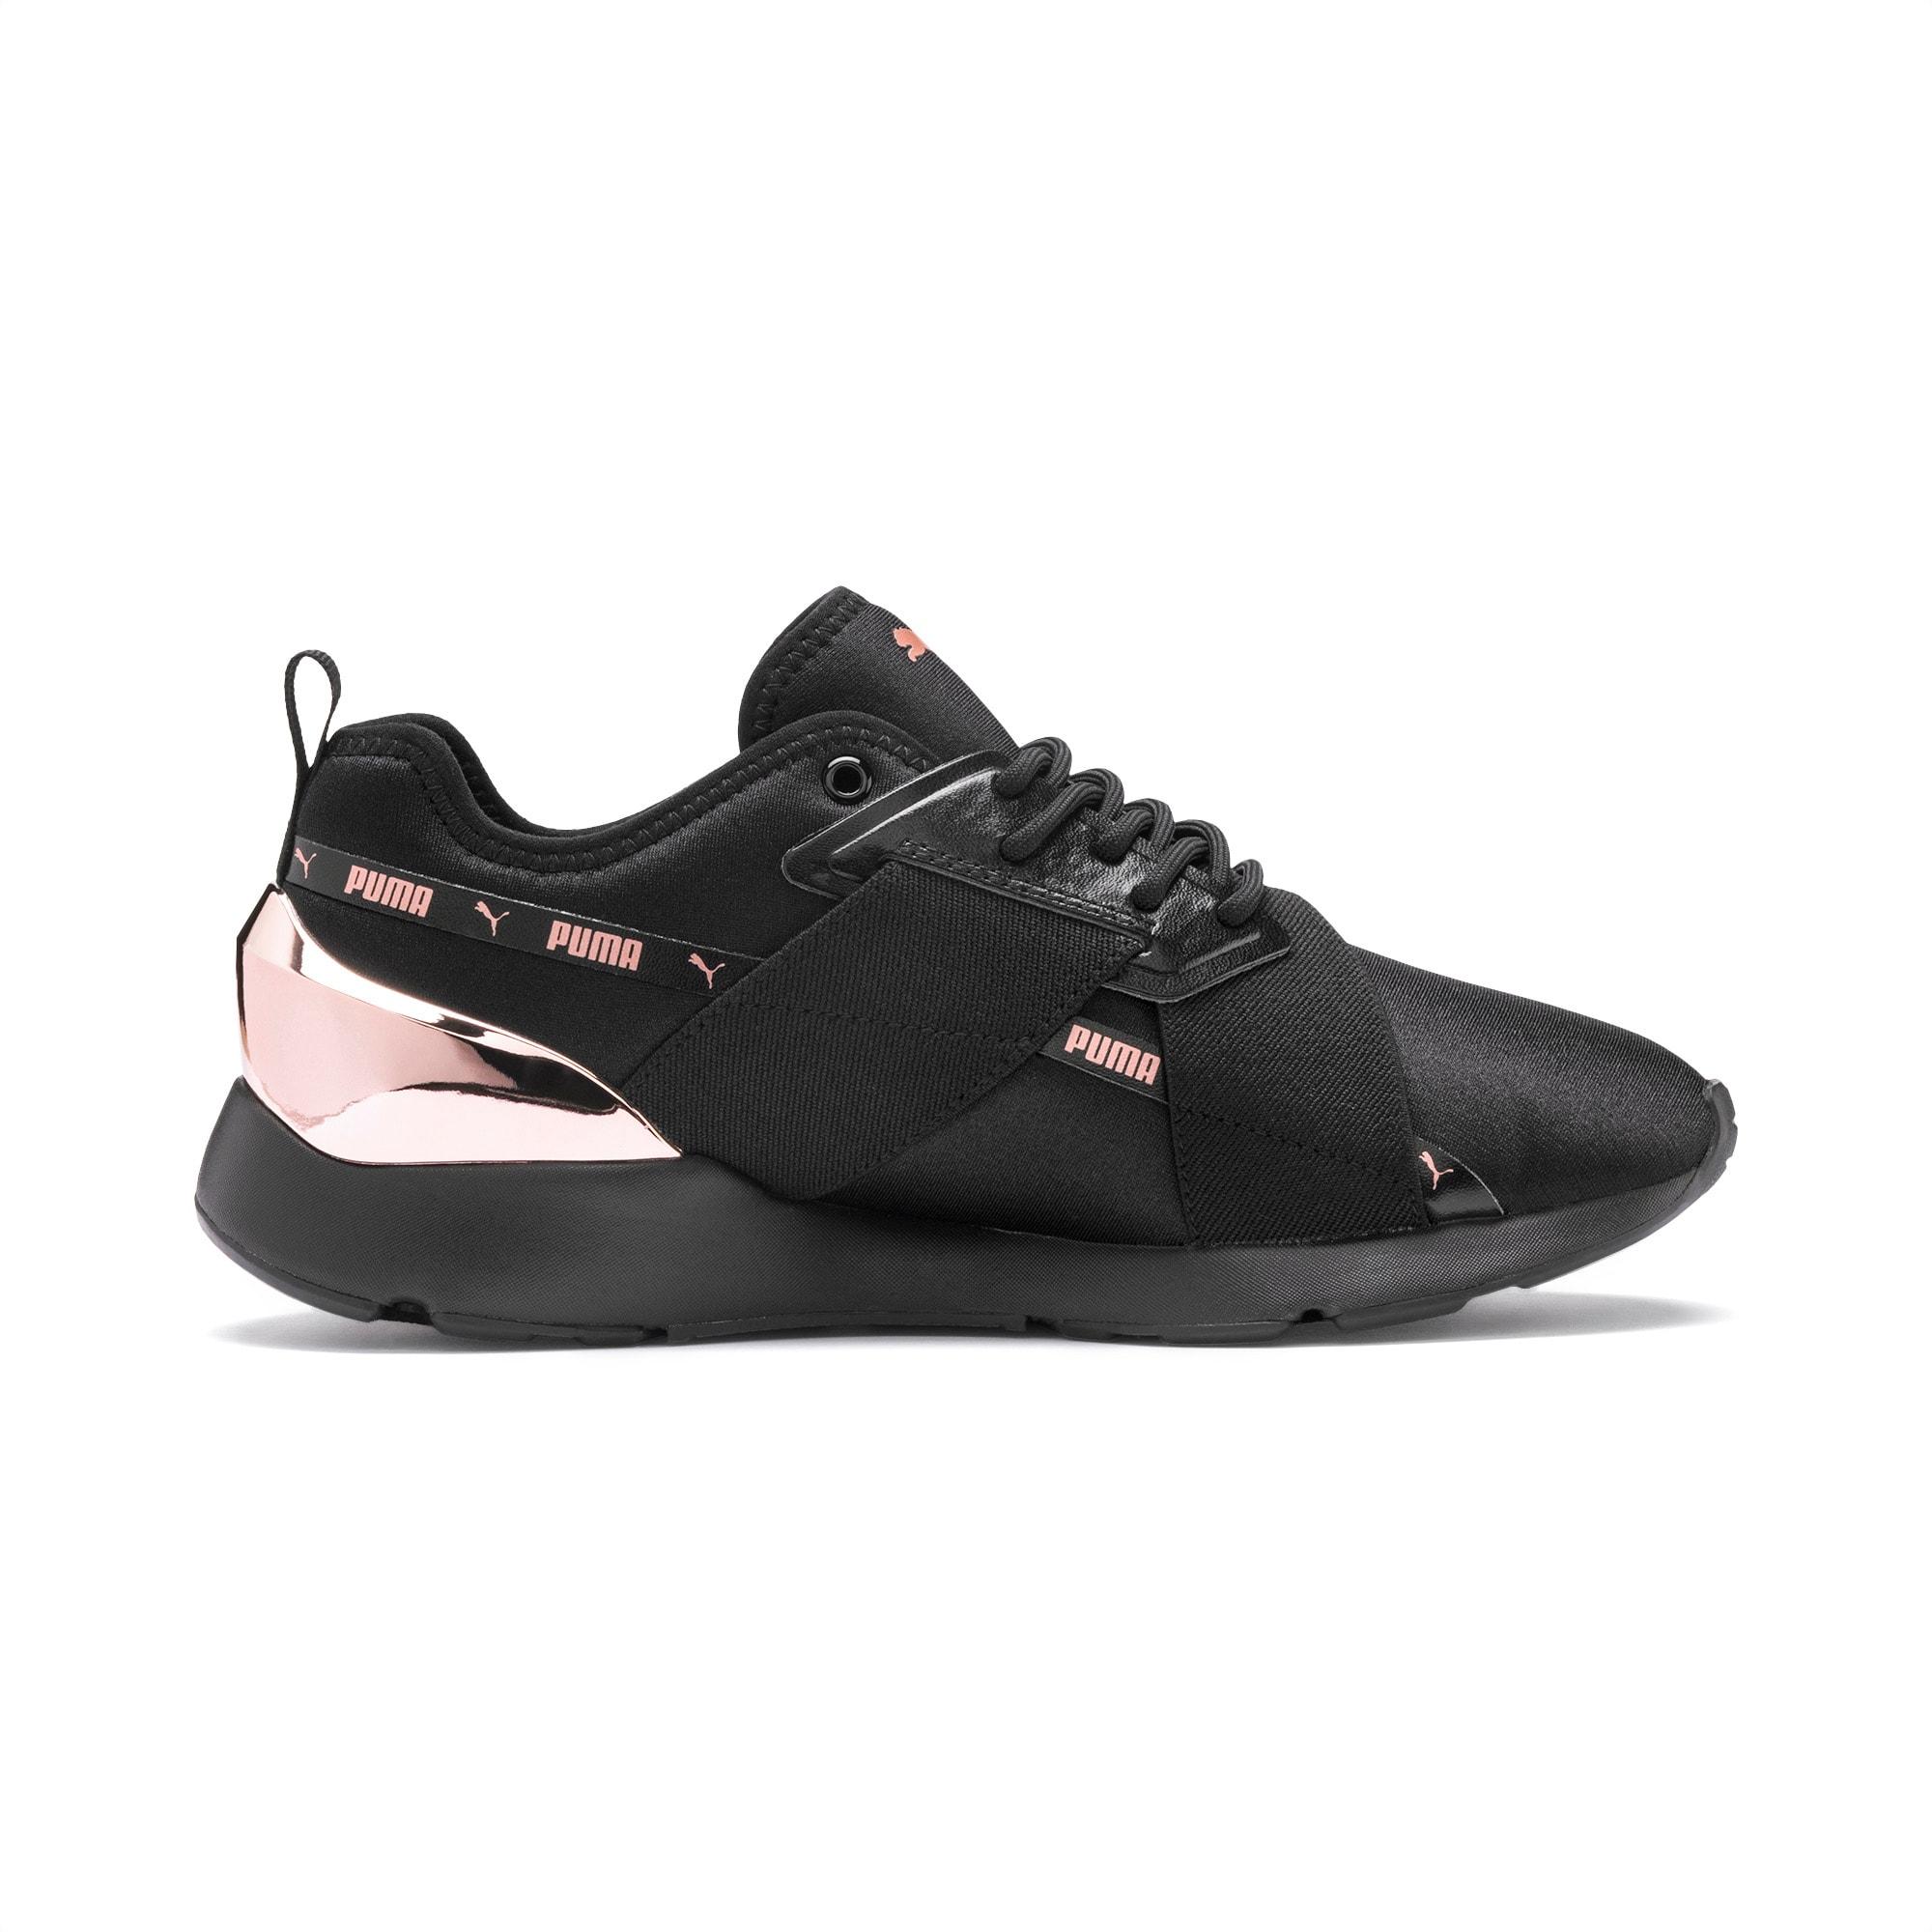 PUMA Neoprene Muse X-2 Metallic Women's Sneakers in 01 (Black) - Lyst